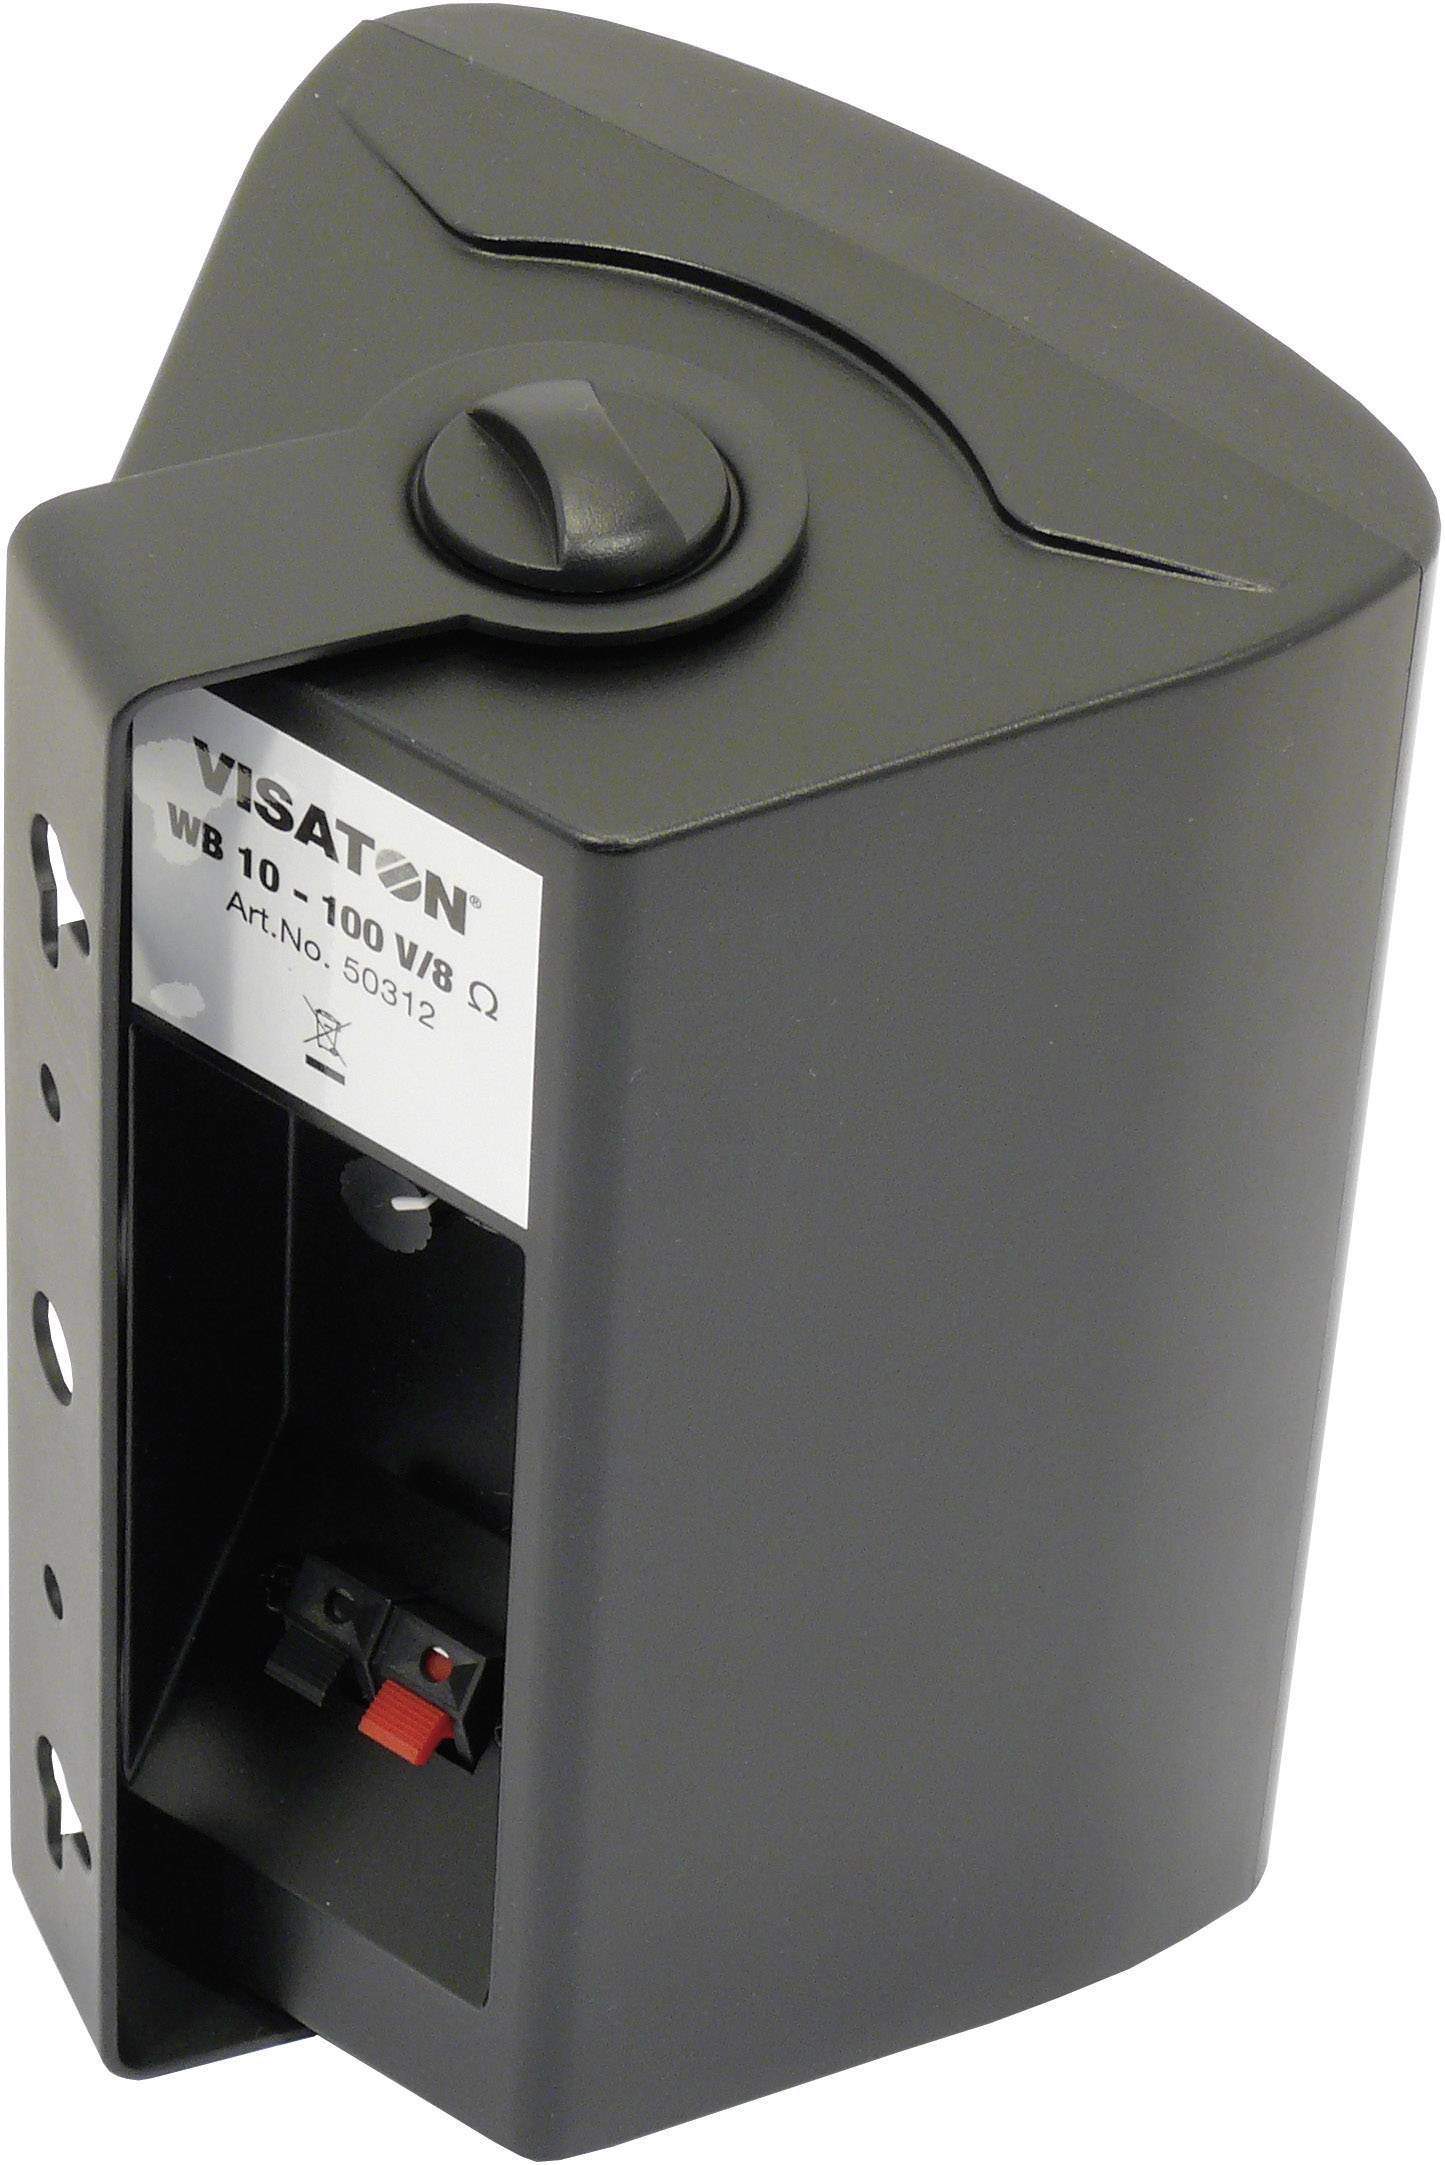 VISATON 2-Wege Kompaktlautsprecher 100 V/ 8 Ohm schwarz - 2-Wege-Kompaktbox mit stabilem Kunststoffg